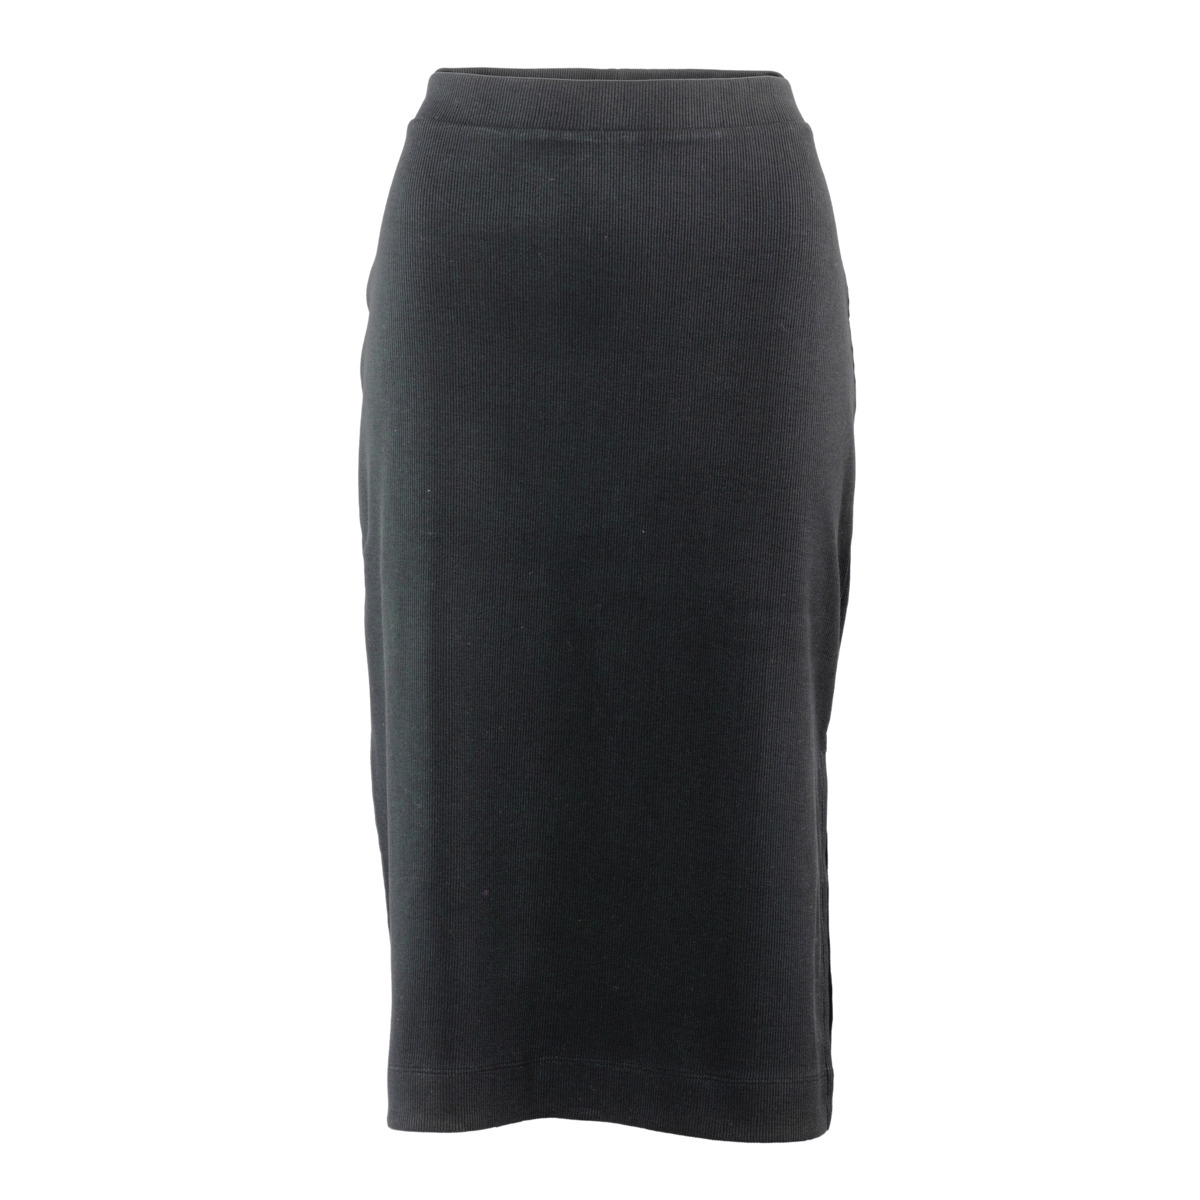 Black Jersey skirt, DEVA